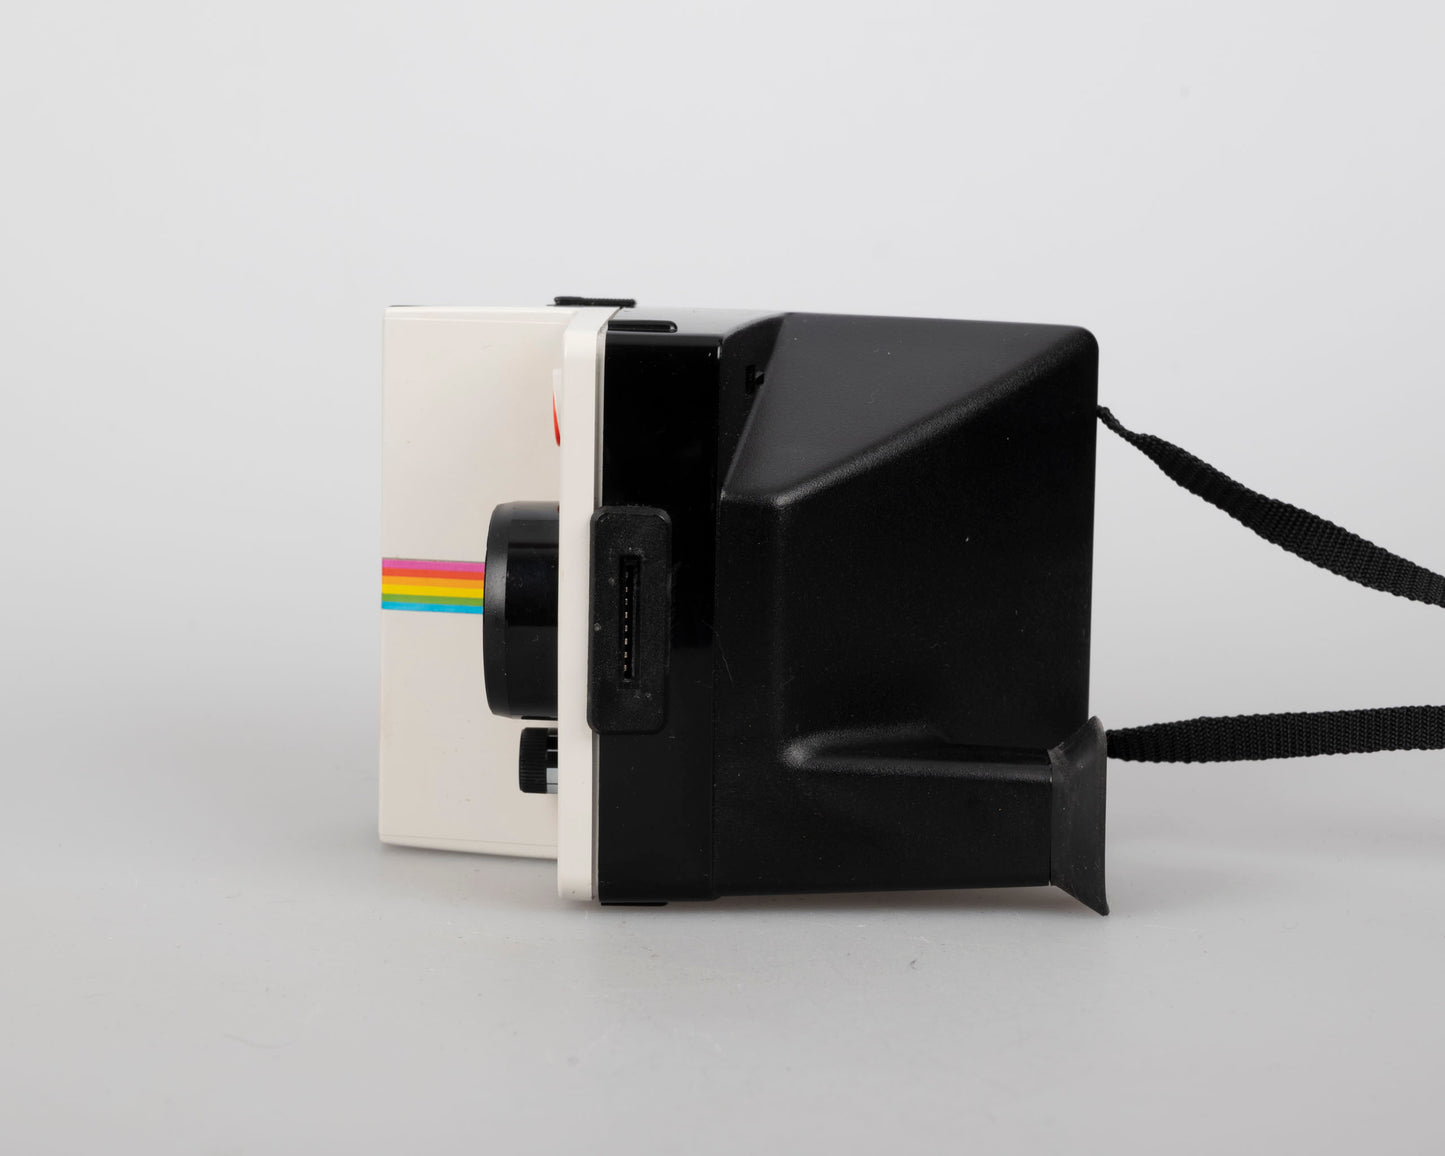 Polaroid One Step (original) users SX-70 instant film (serial CVH821DA)